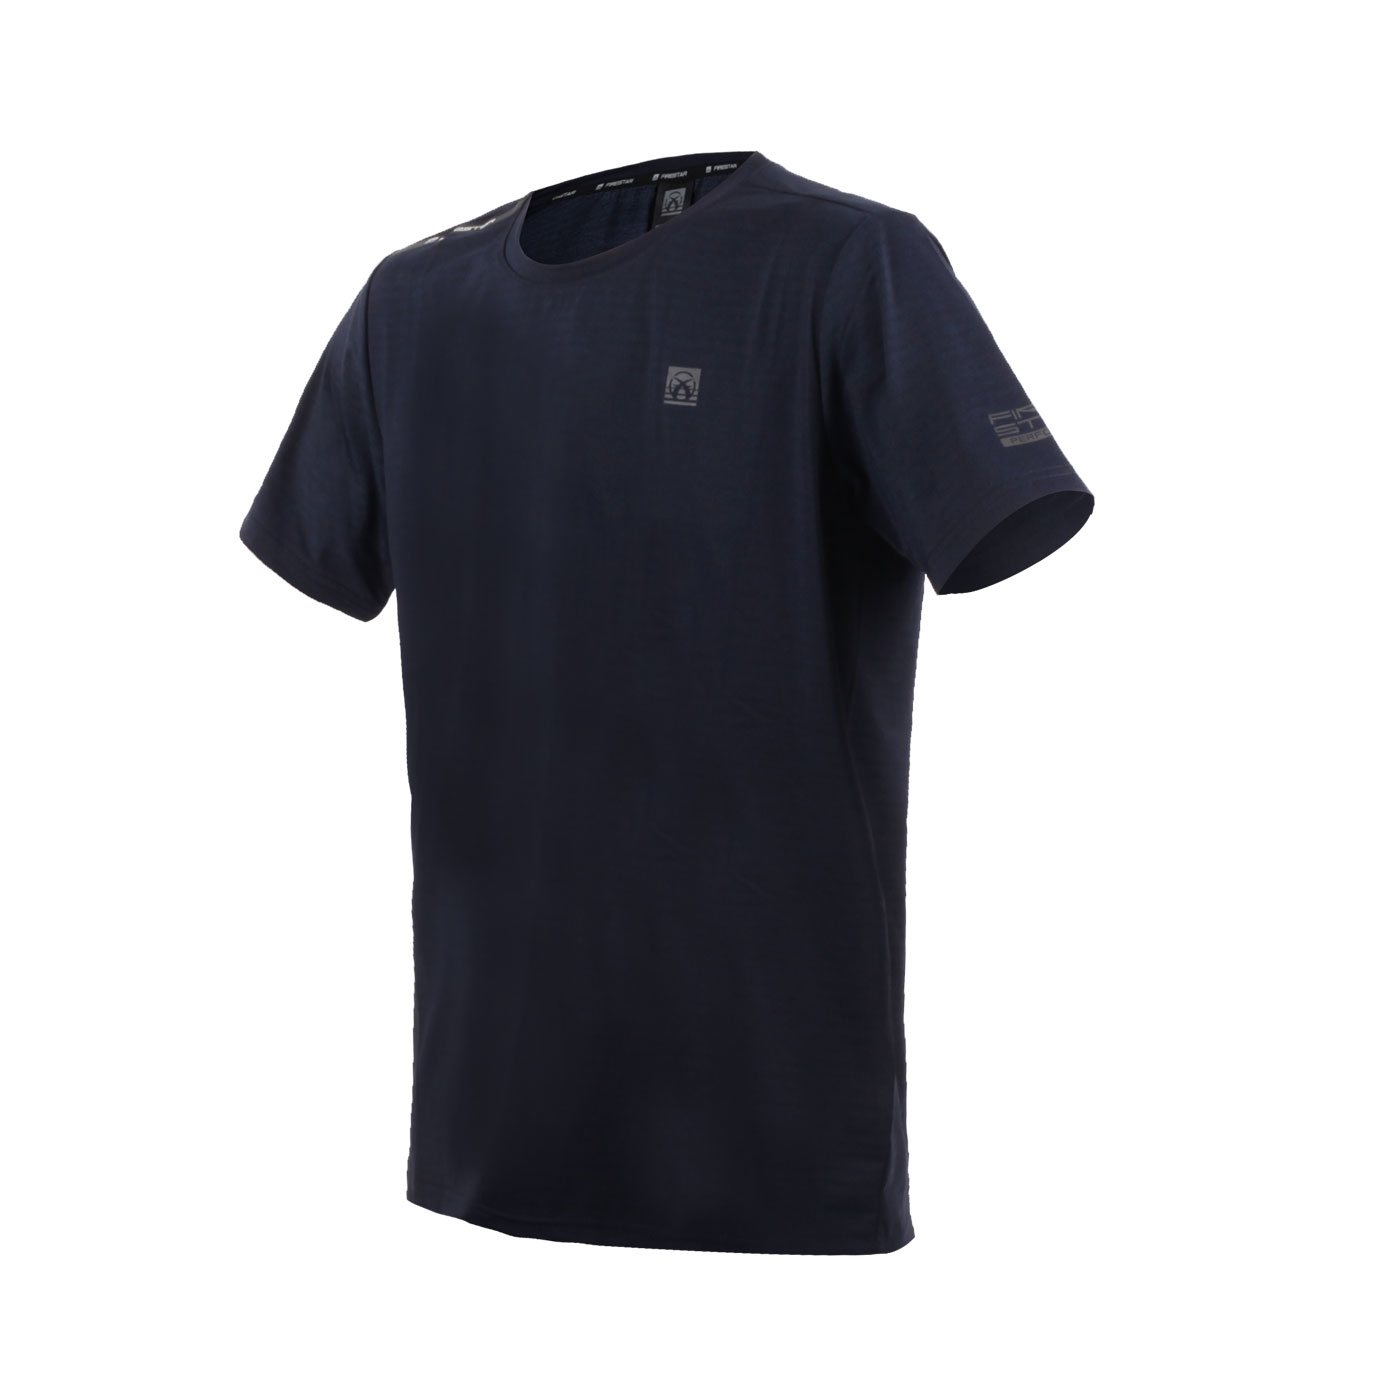 FIRESTAR 男款彈性圓領短袖T恤  D3233-93